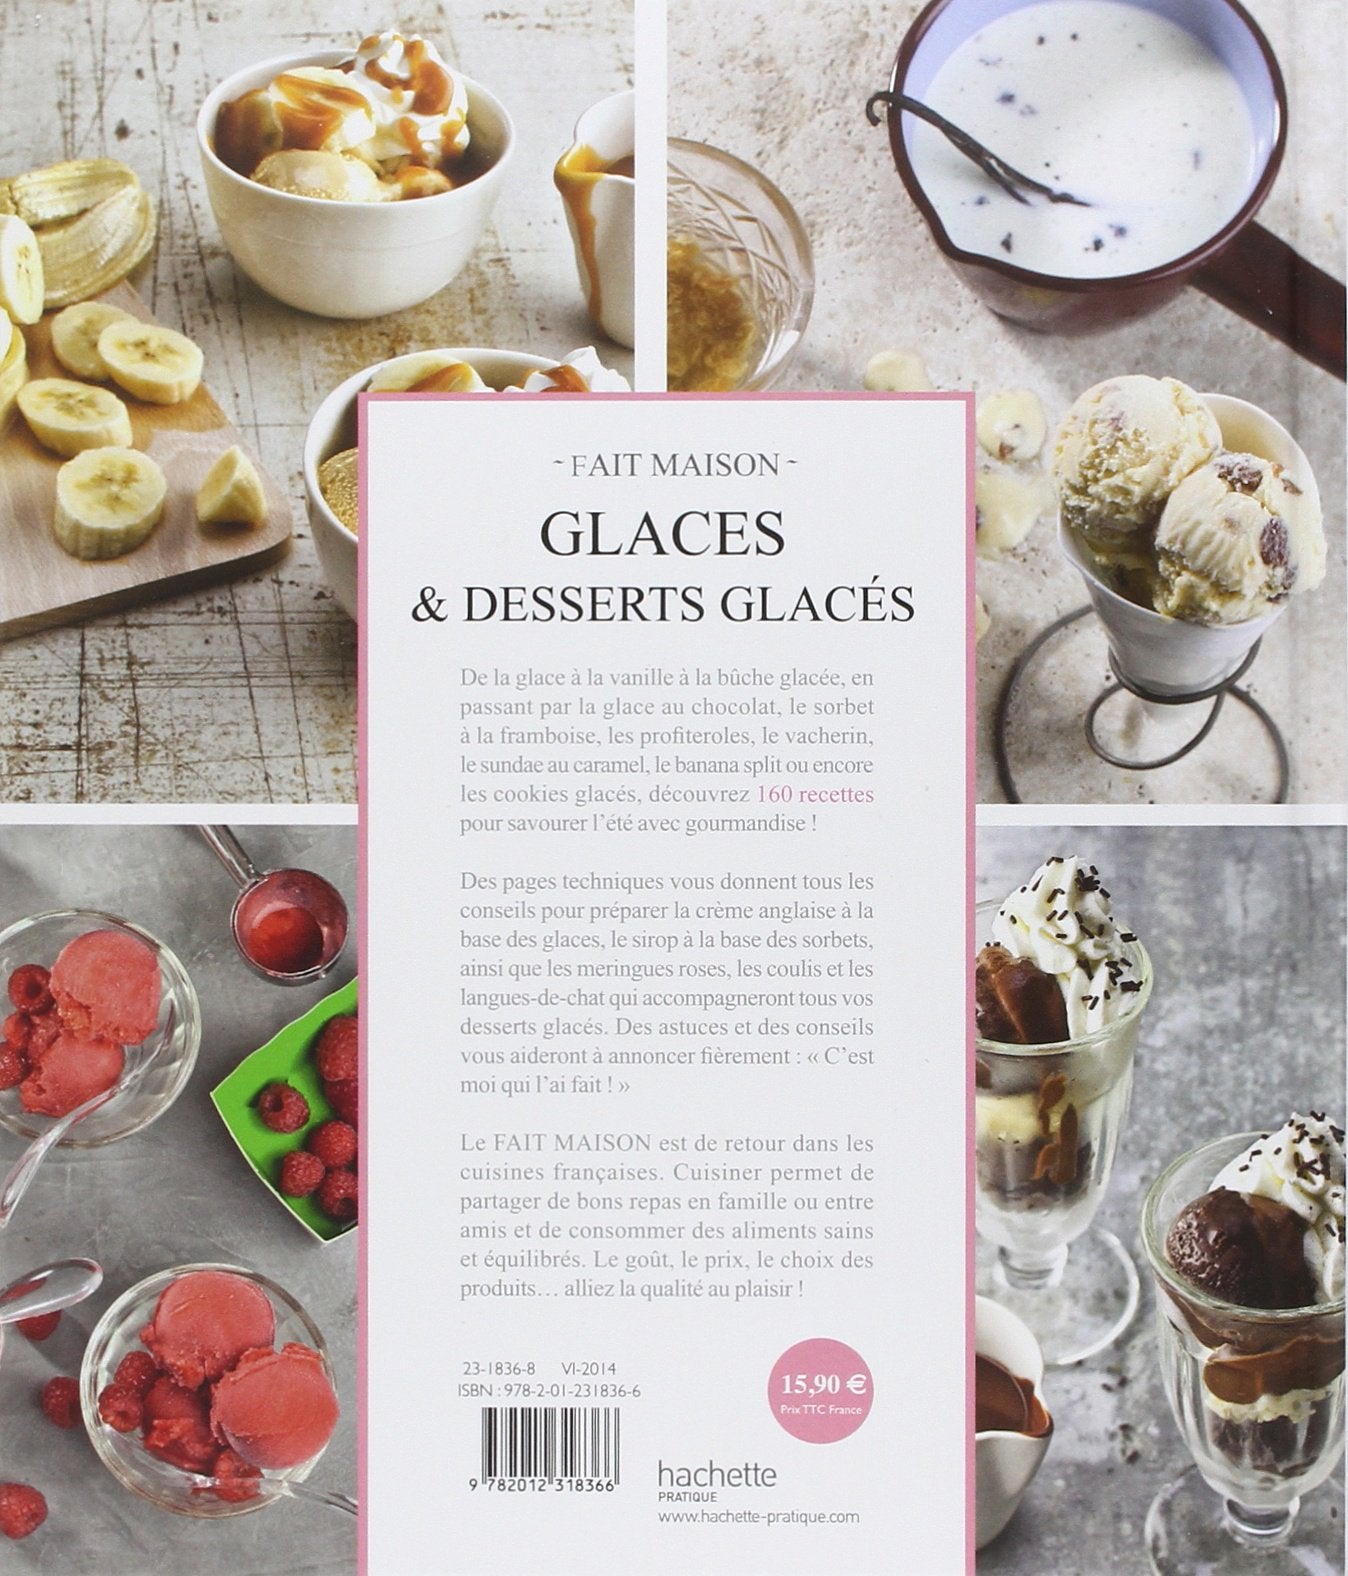 Fait maison : Glaces & desserts glacés: Recettes gourmandes testées à la maison (Eva Harlé)